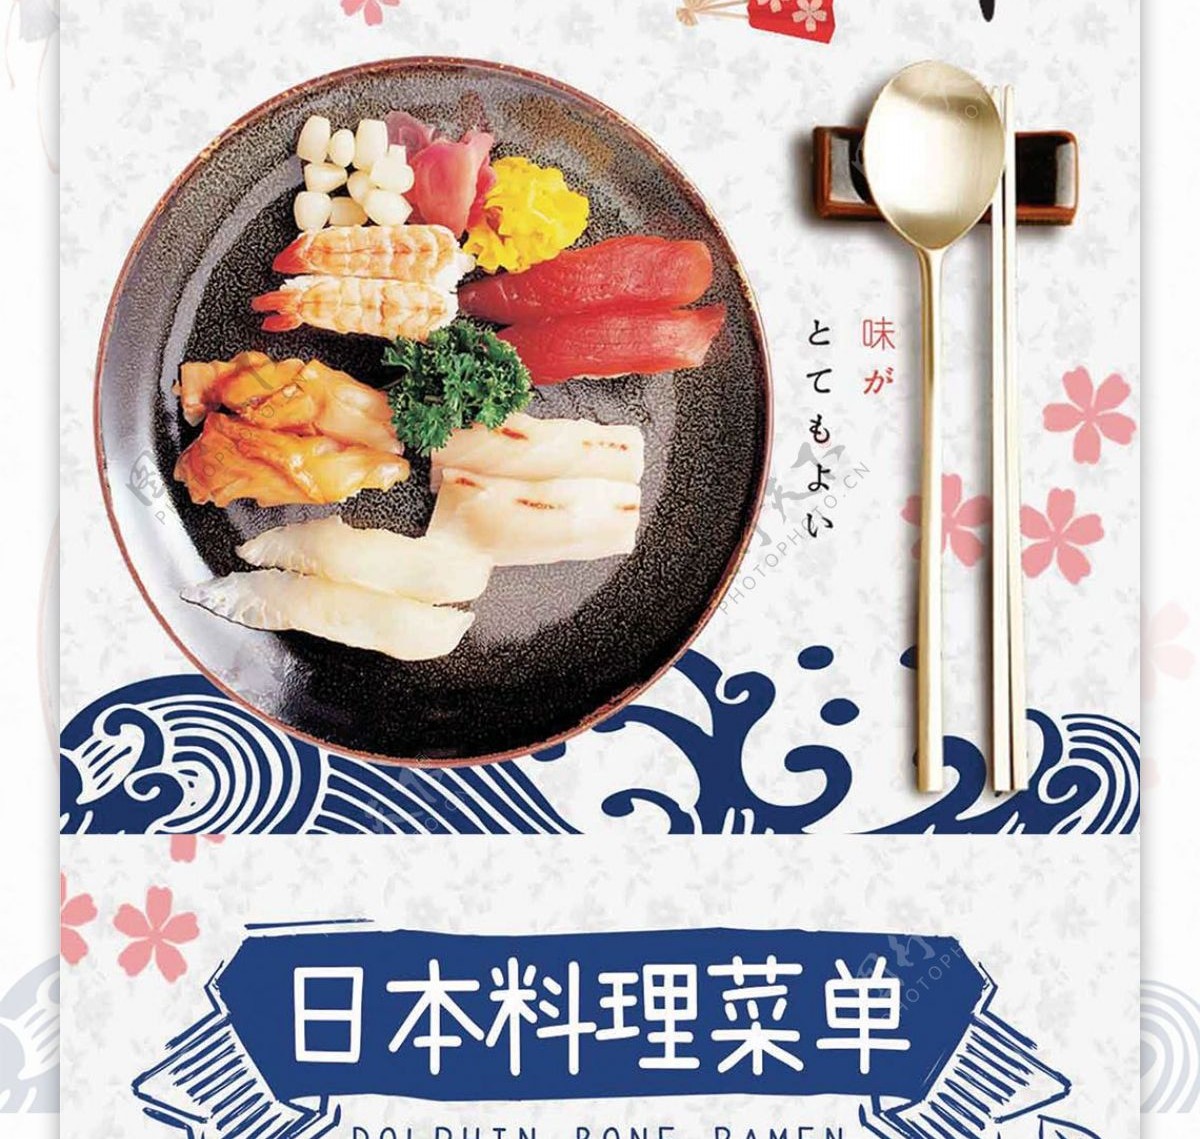 白色清新日本料理生鱼片店铺菜谱设计